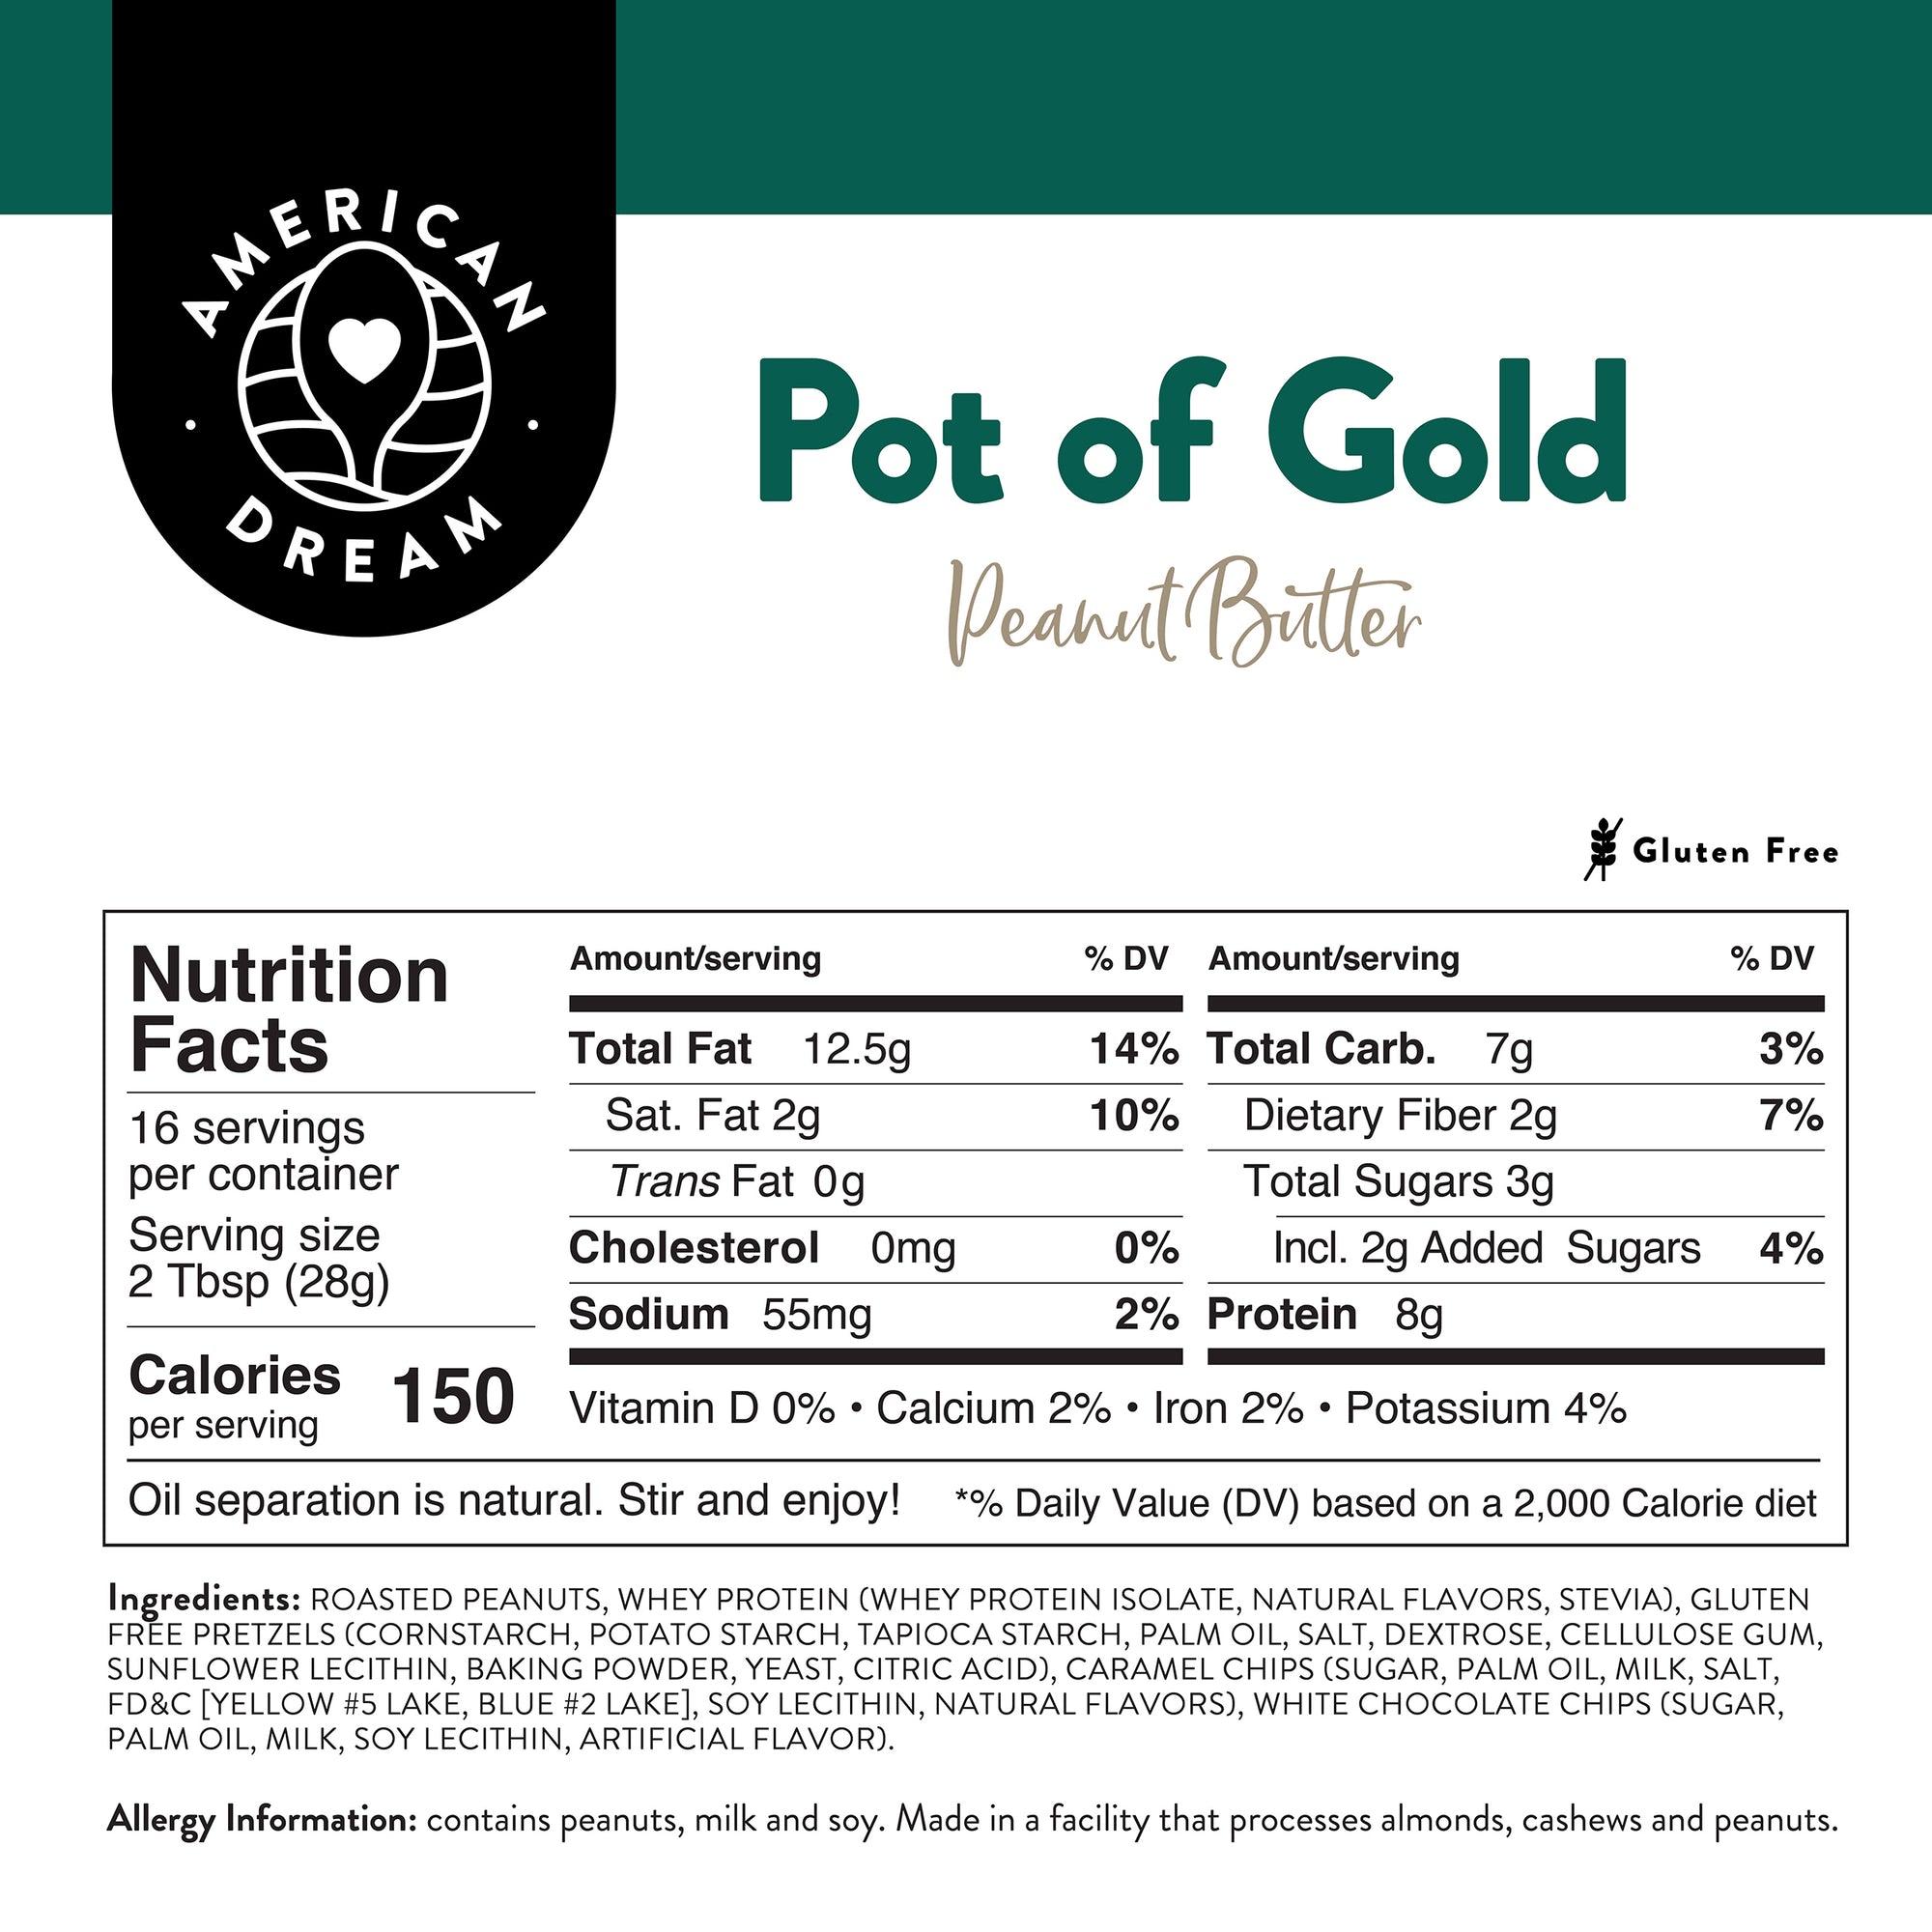 Gluten-Free Pot of Gold Peanut Butter